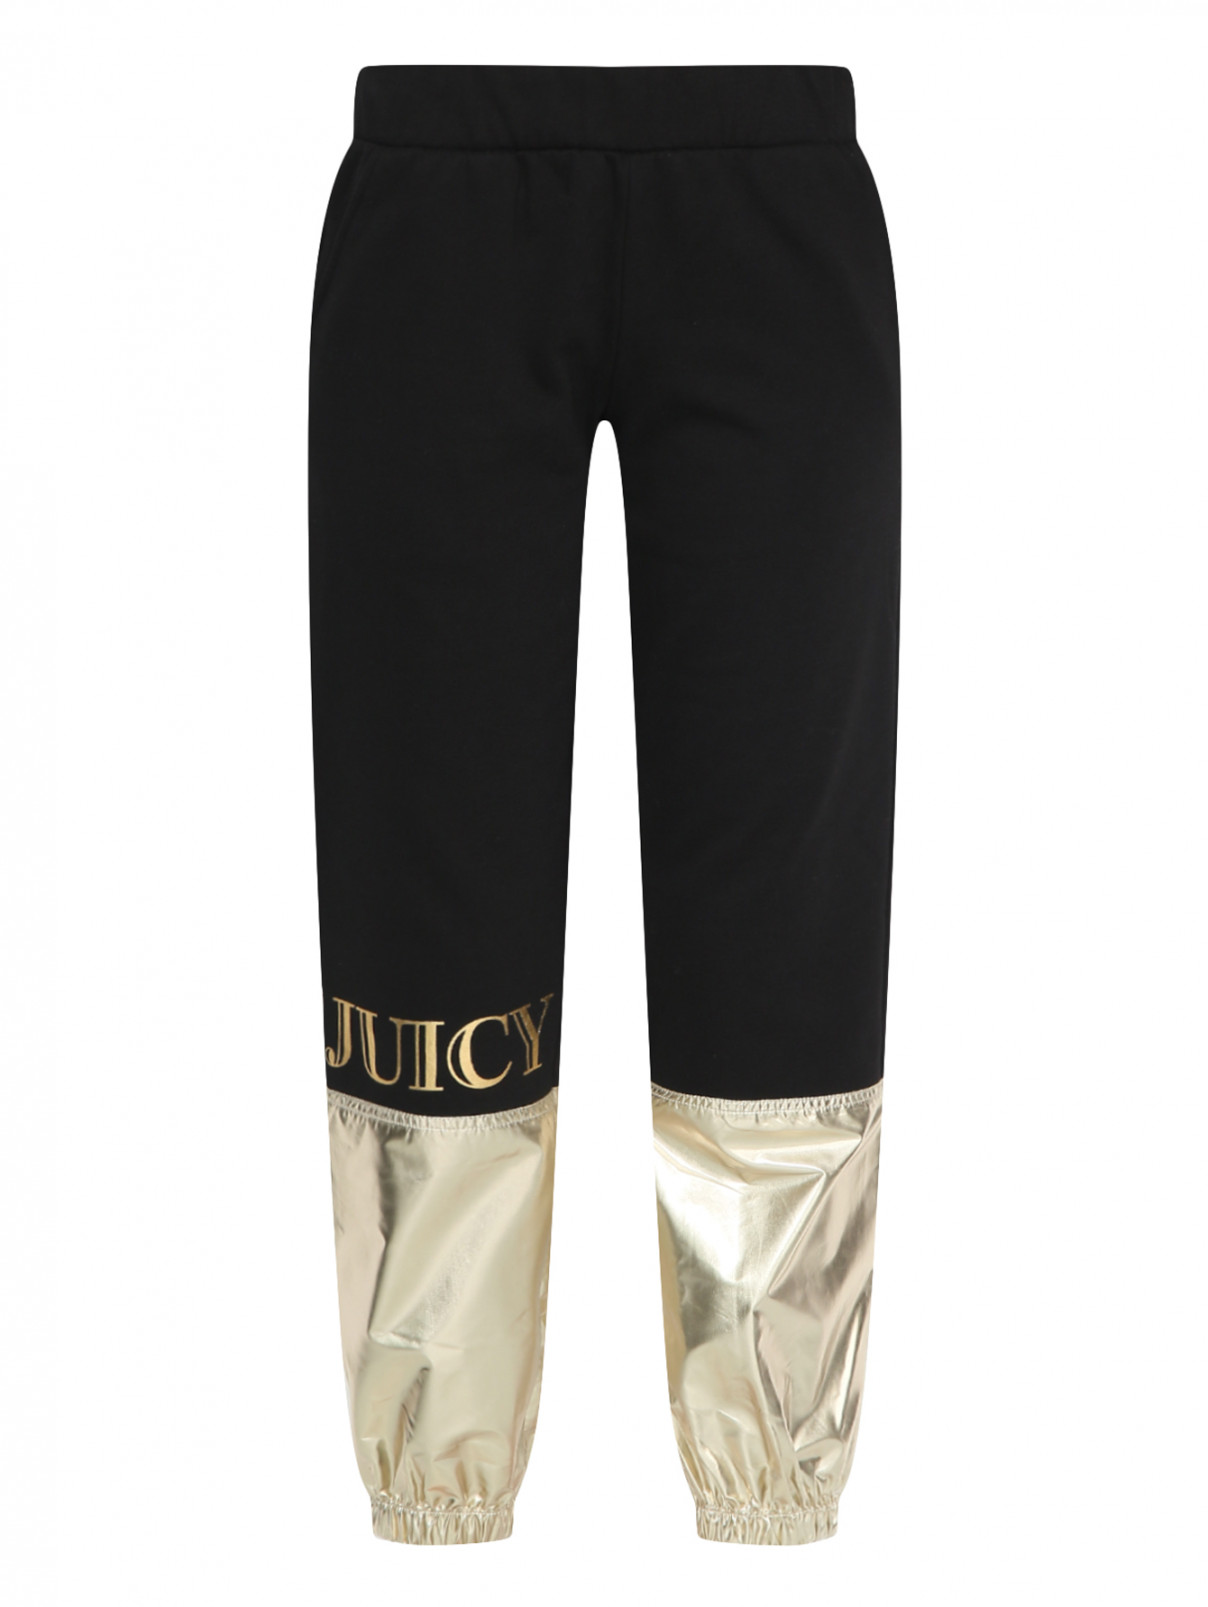 Спортивные брюки из хлопка с принтом Juicy Couture  –  Общий вид  – Цвет:  Черный